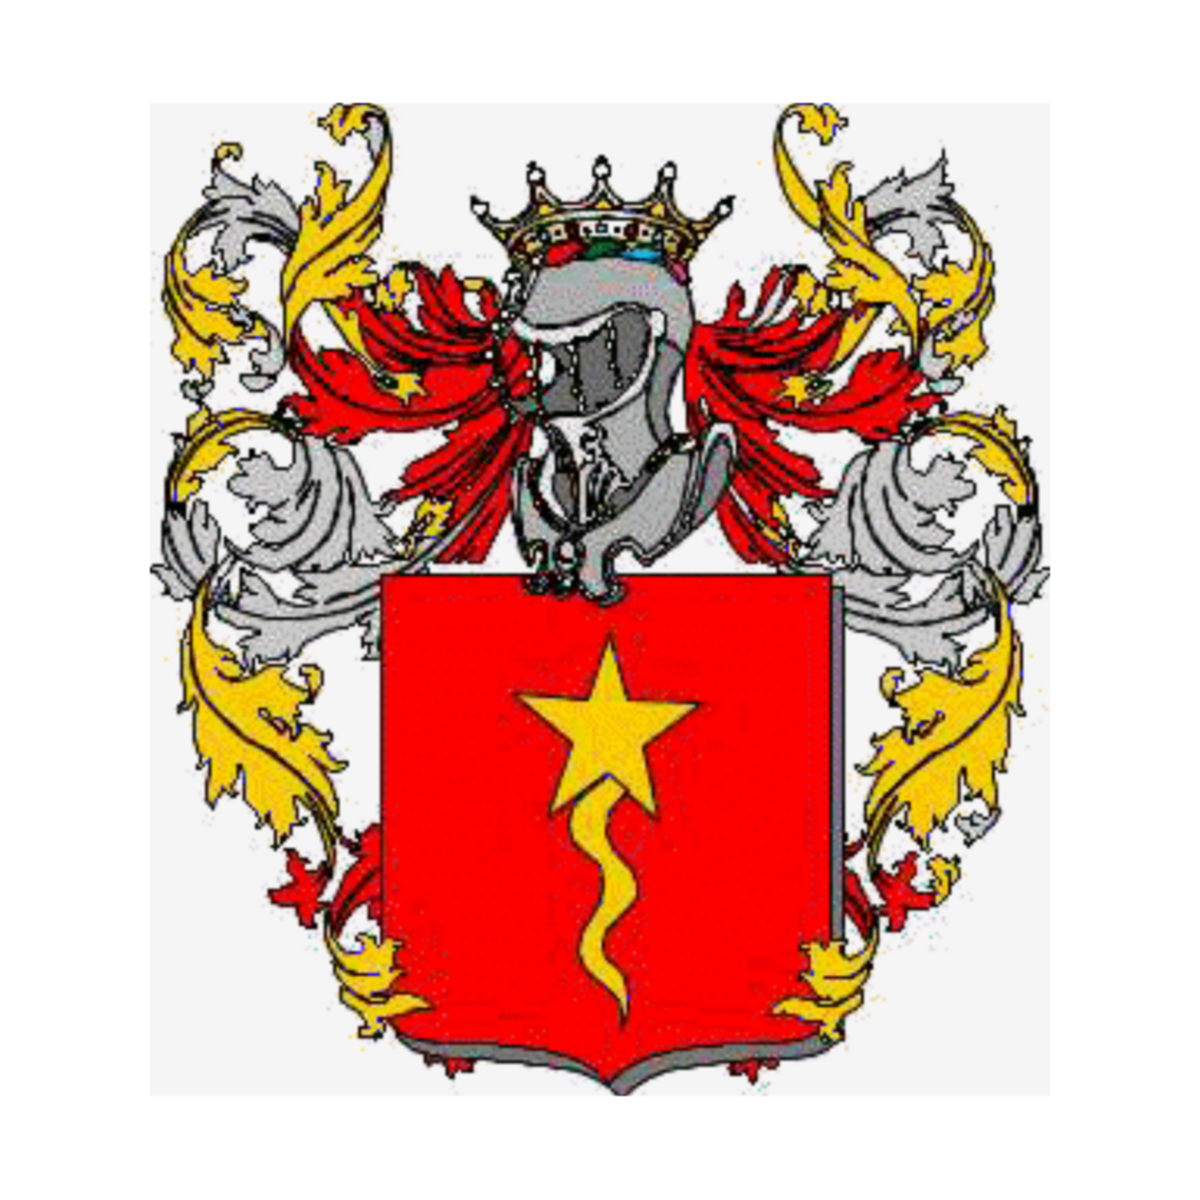 Escudo de la familiaRossi, Rossi,Russo